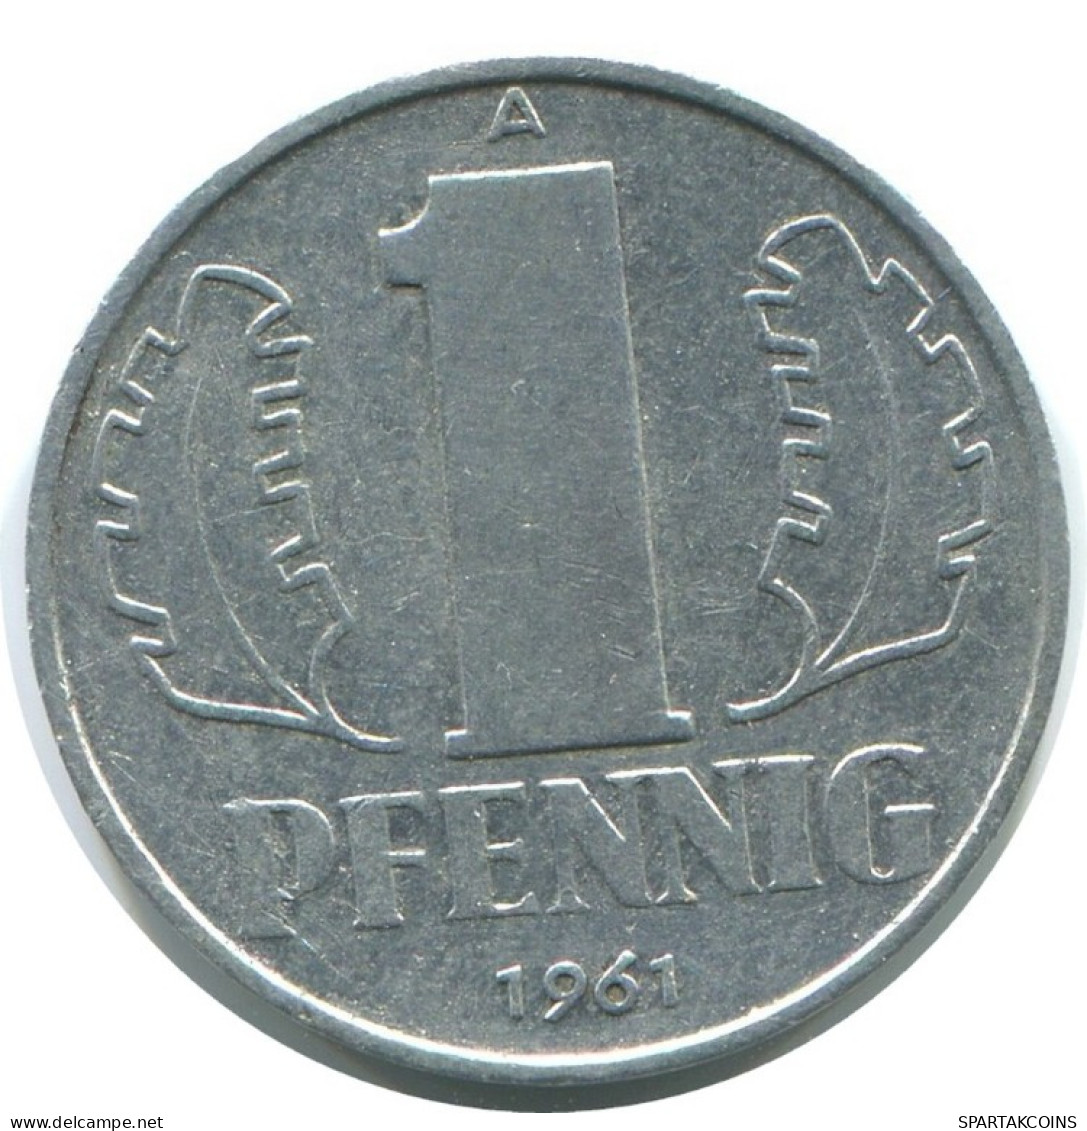 1 PFENNIG 1961 A DDR EAST GERMANY Coin #AE041.U.A - 1 Pfennig